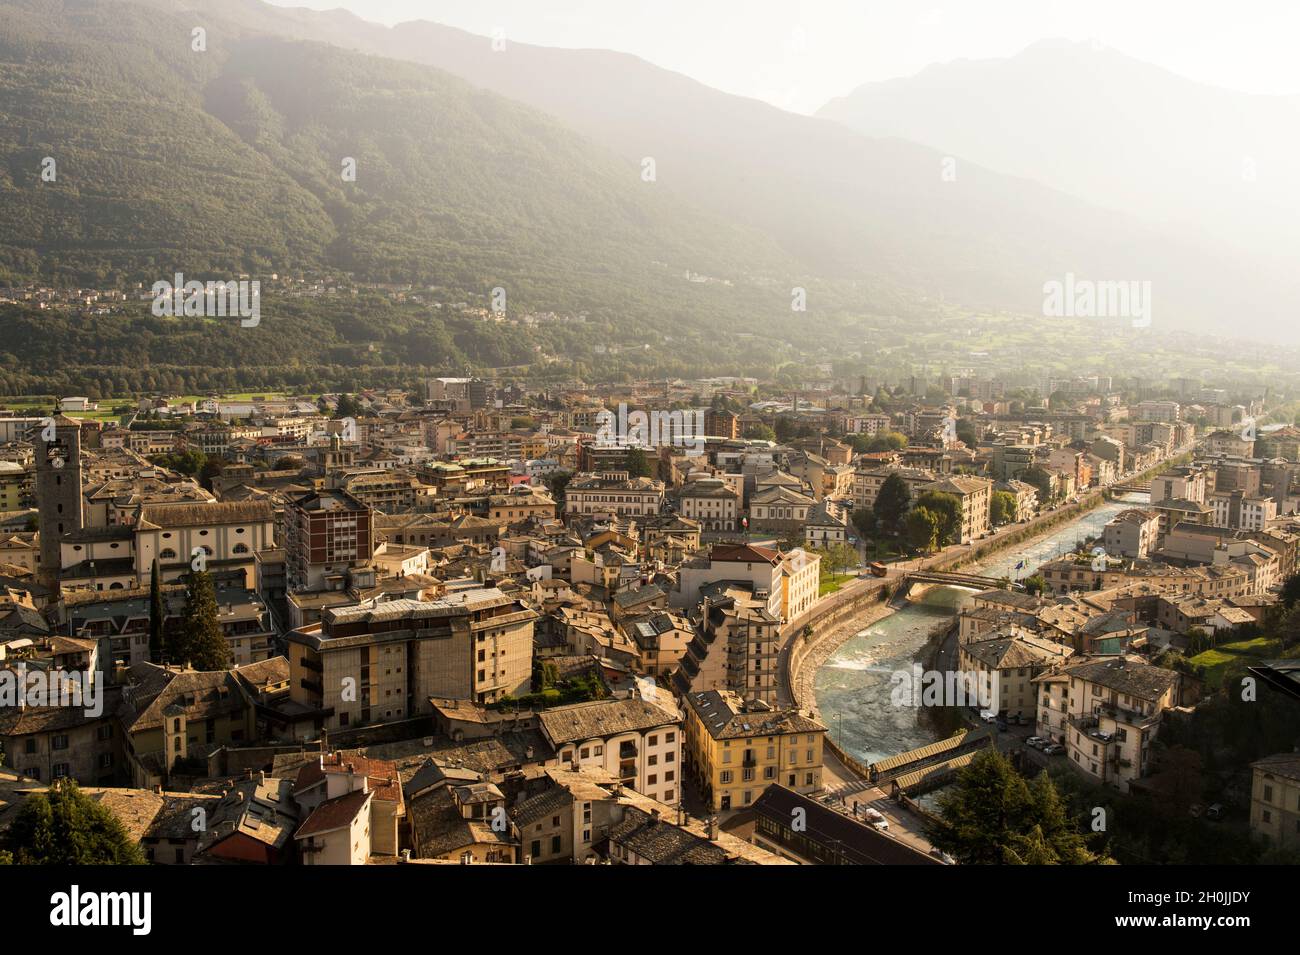 ITALY, LOMBARDY, SONDRIO, CITYSCAPE WITH MALLERO RIVER Stock Photo